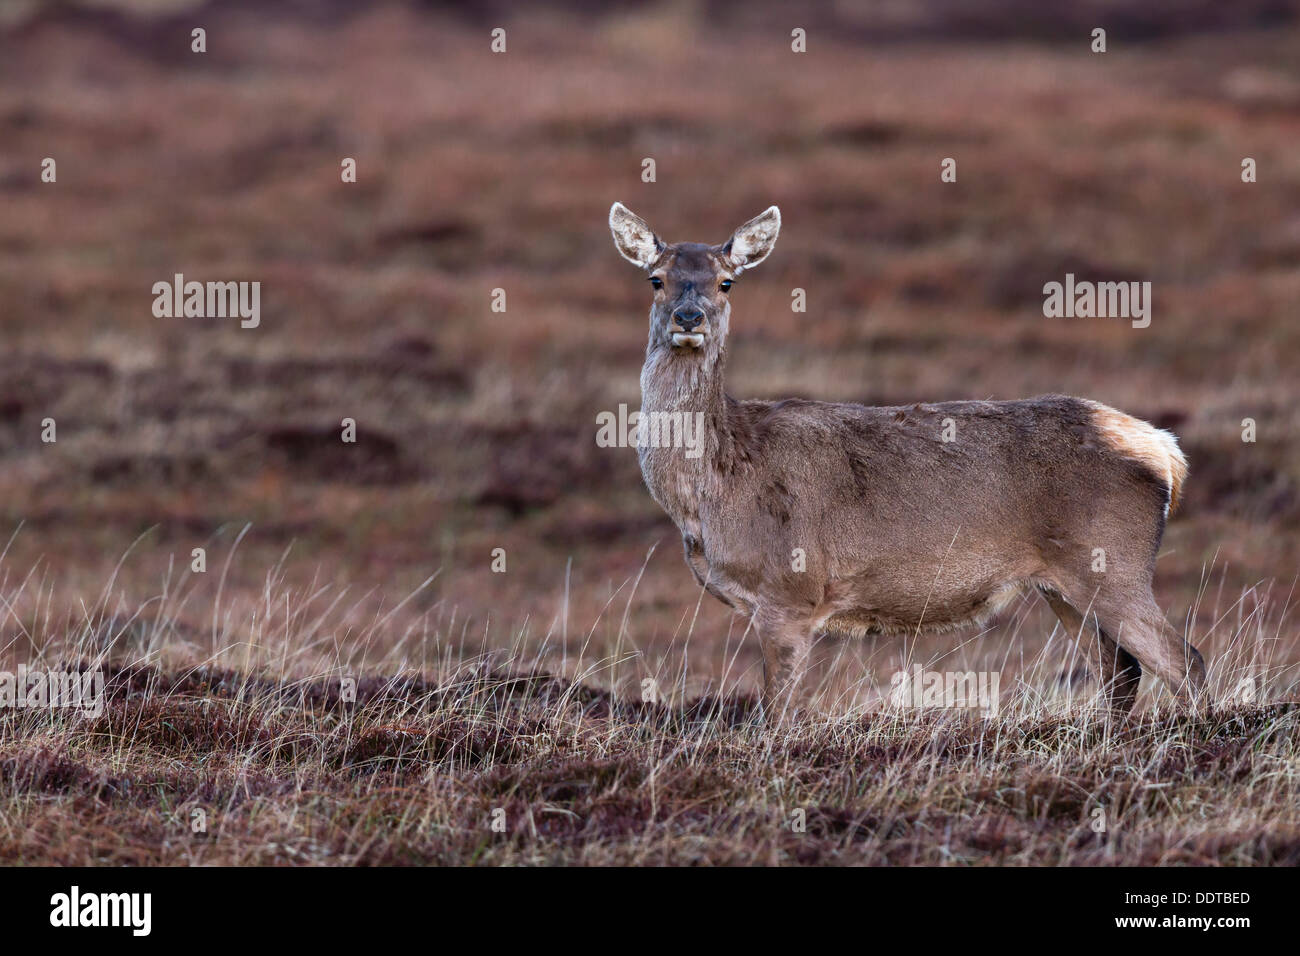 Red deer hind on moorland Stock Photo